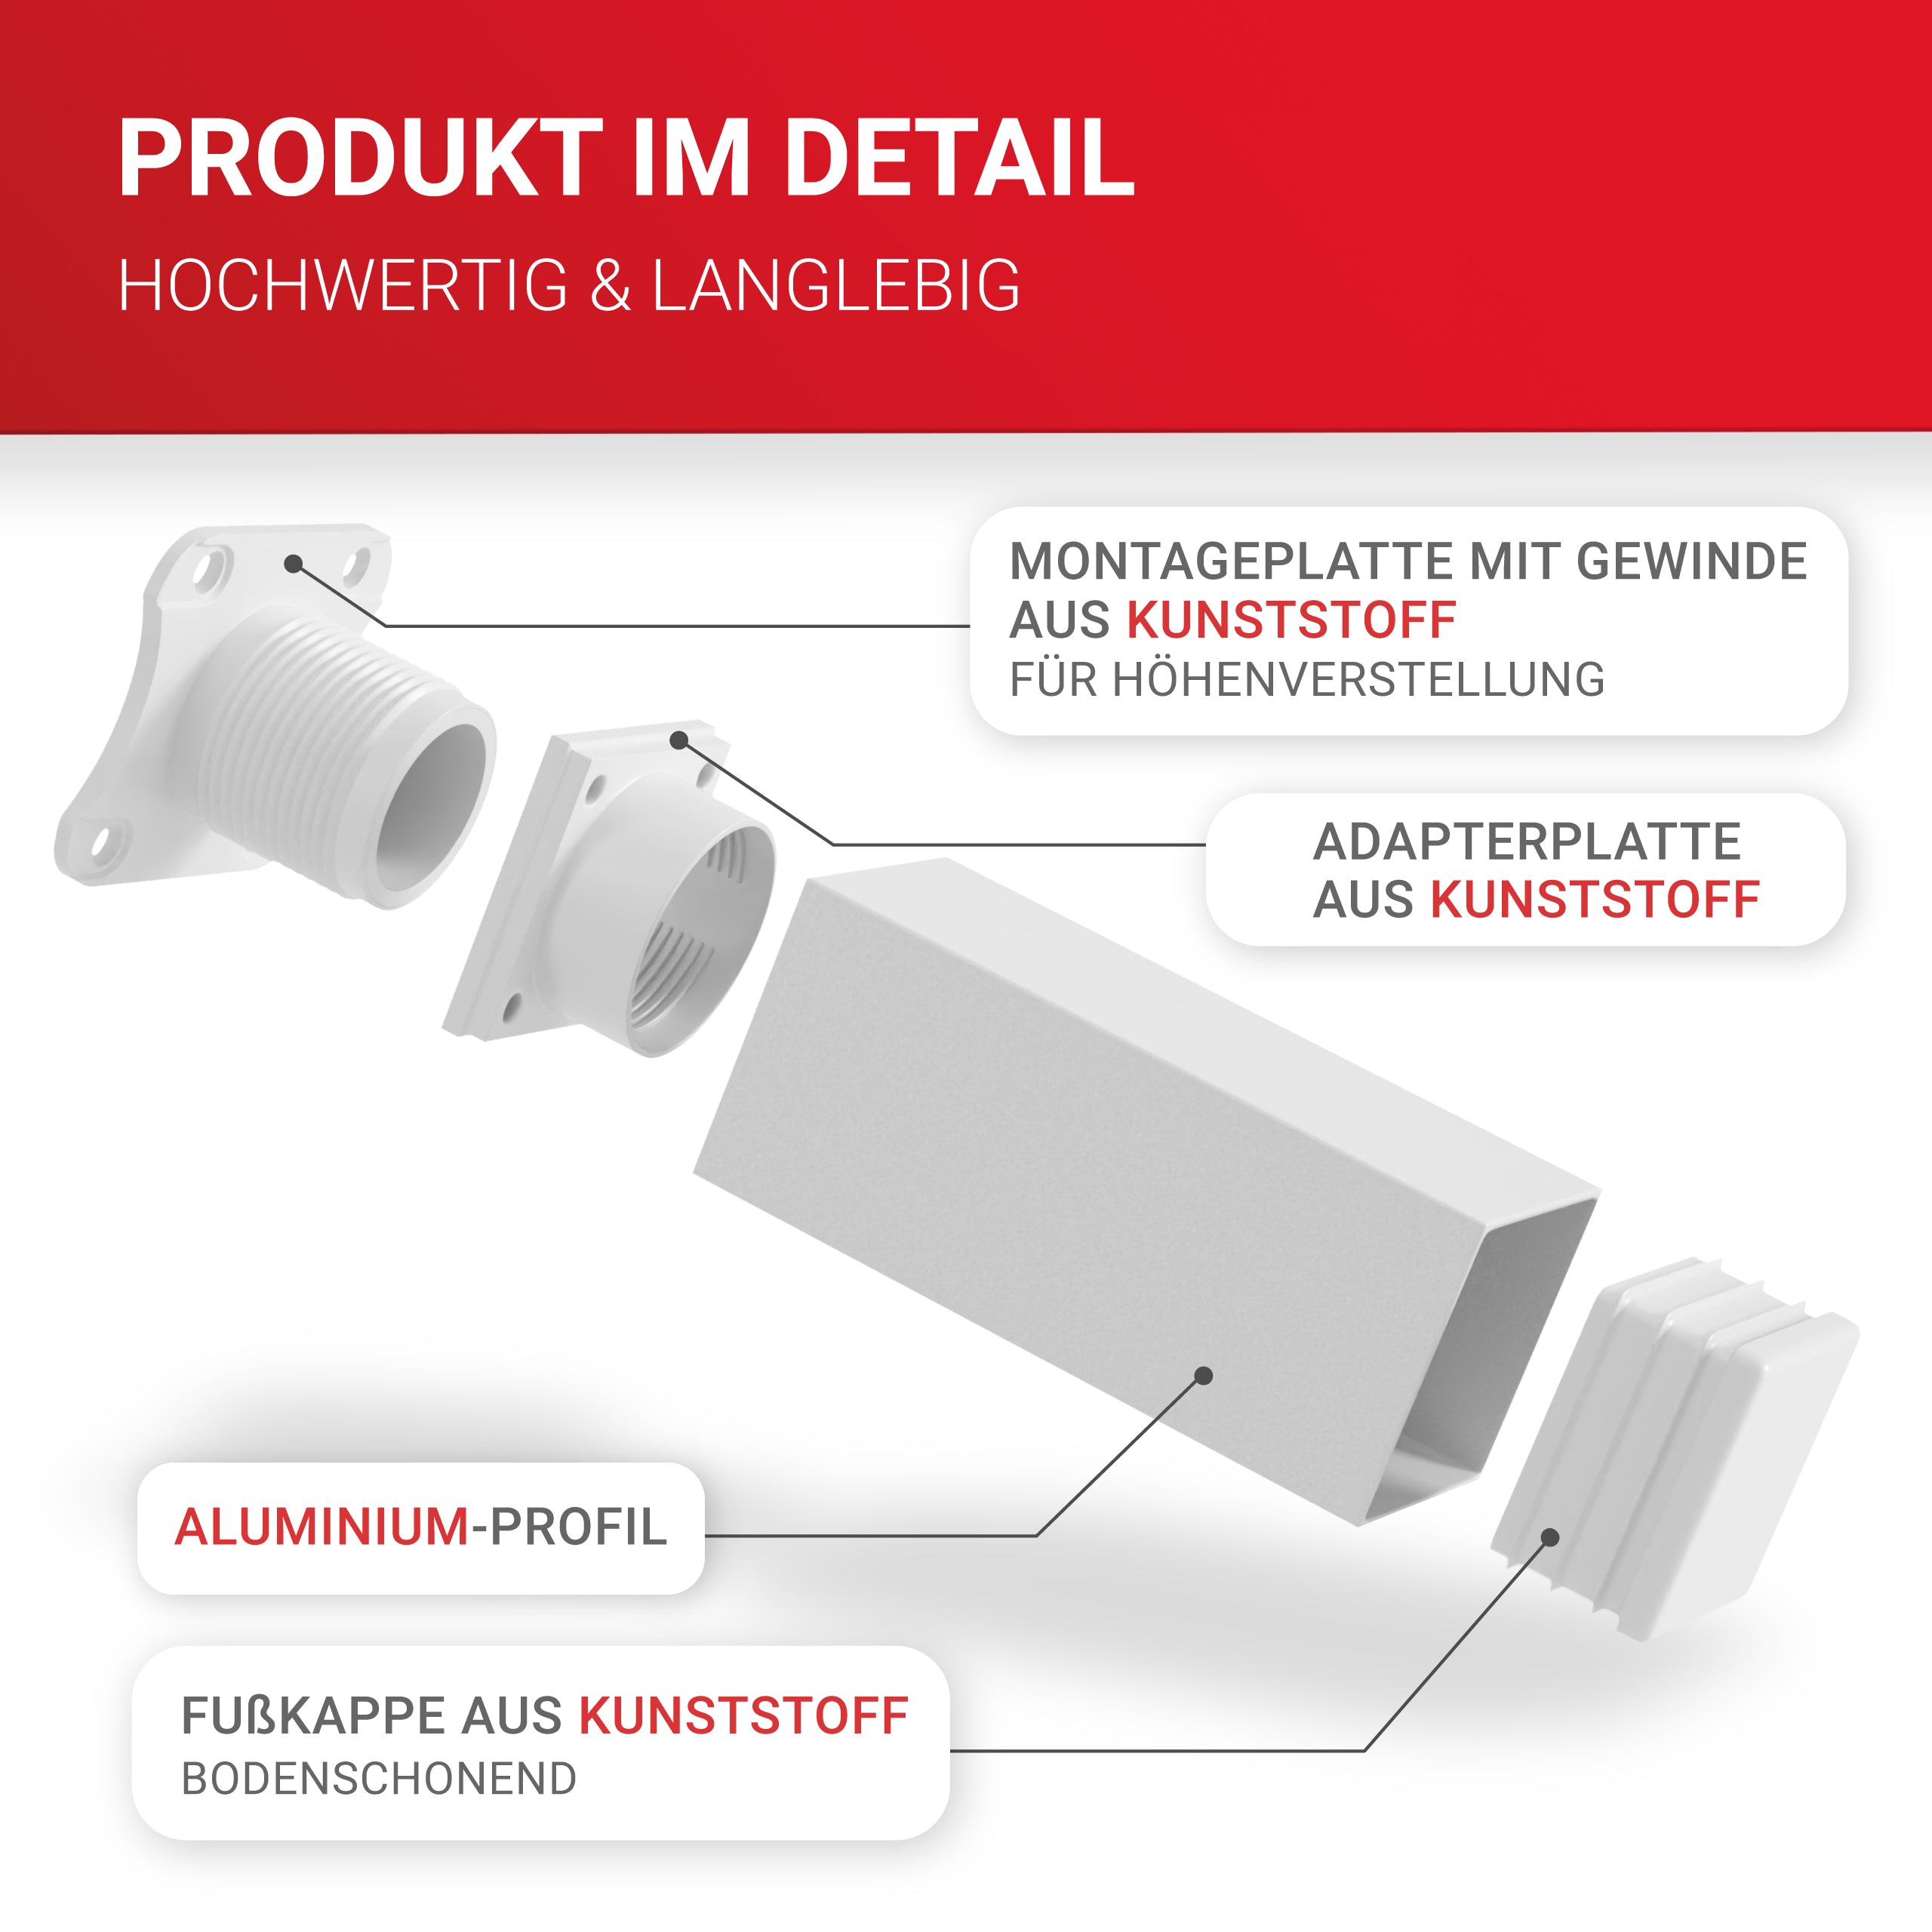 LouMaxx Möbelfüße verstellbar eckig– 4er Set 40x40x100mm in Weiß inkl. Befestigungsplatte – Füße für Möbel aus Aluminium